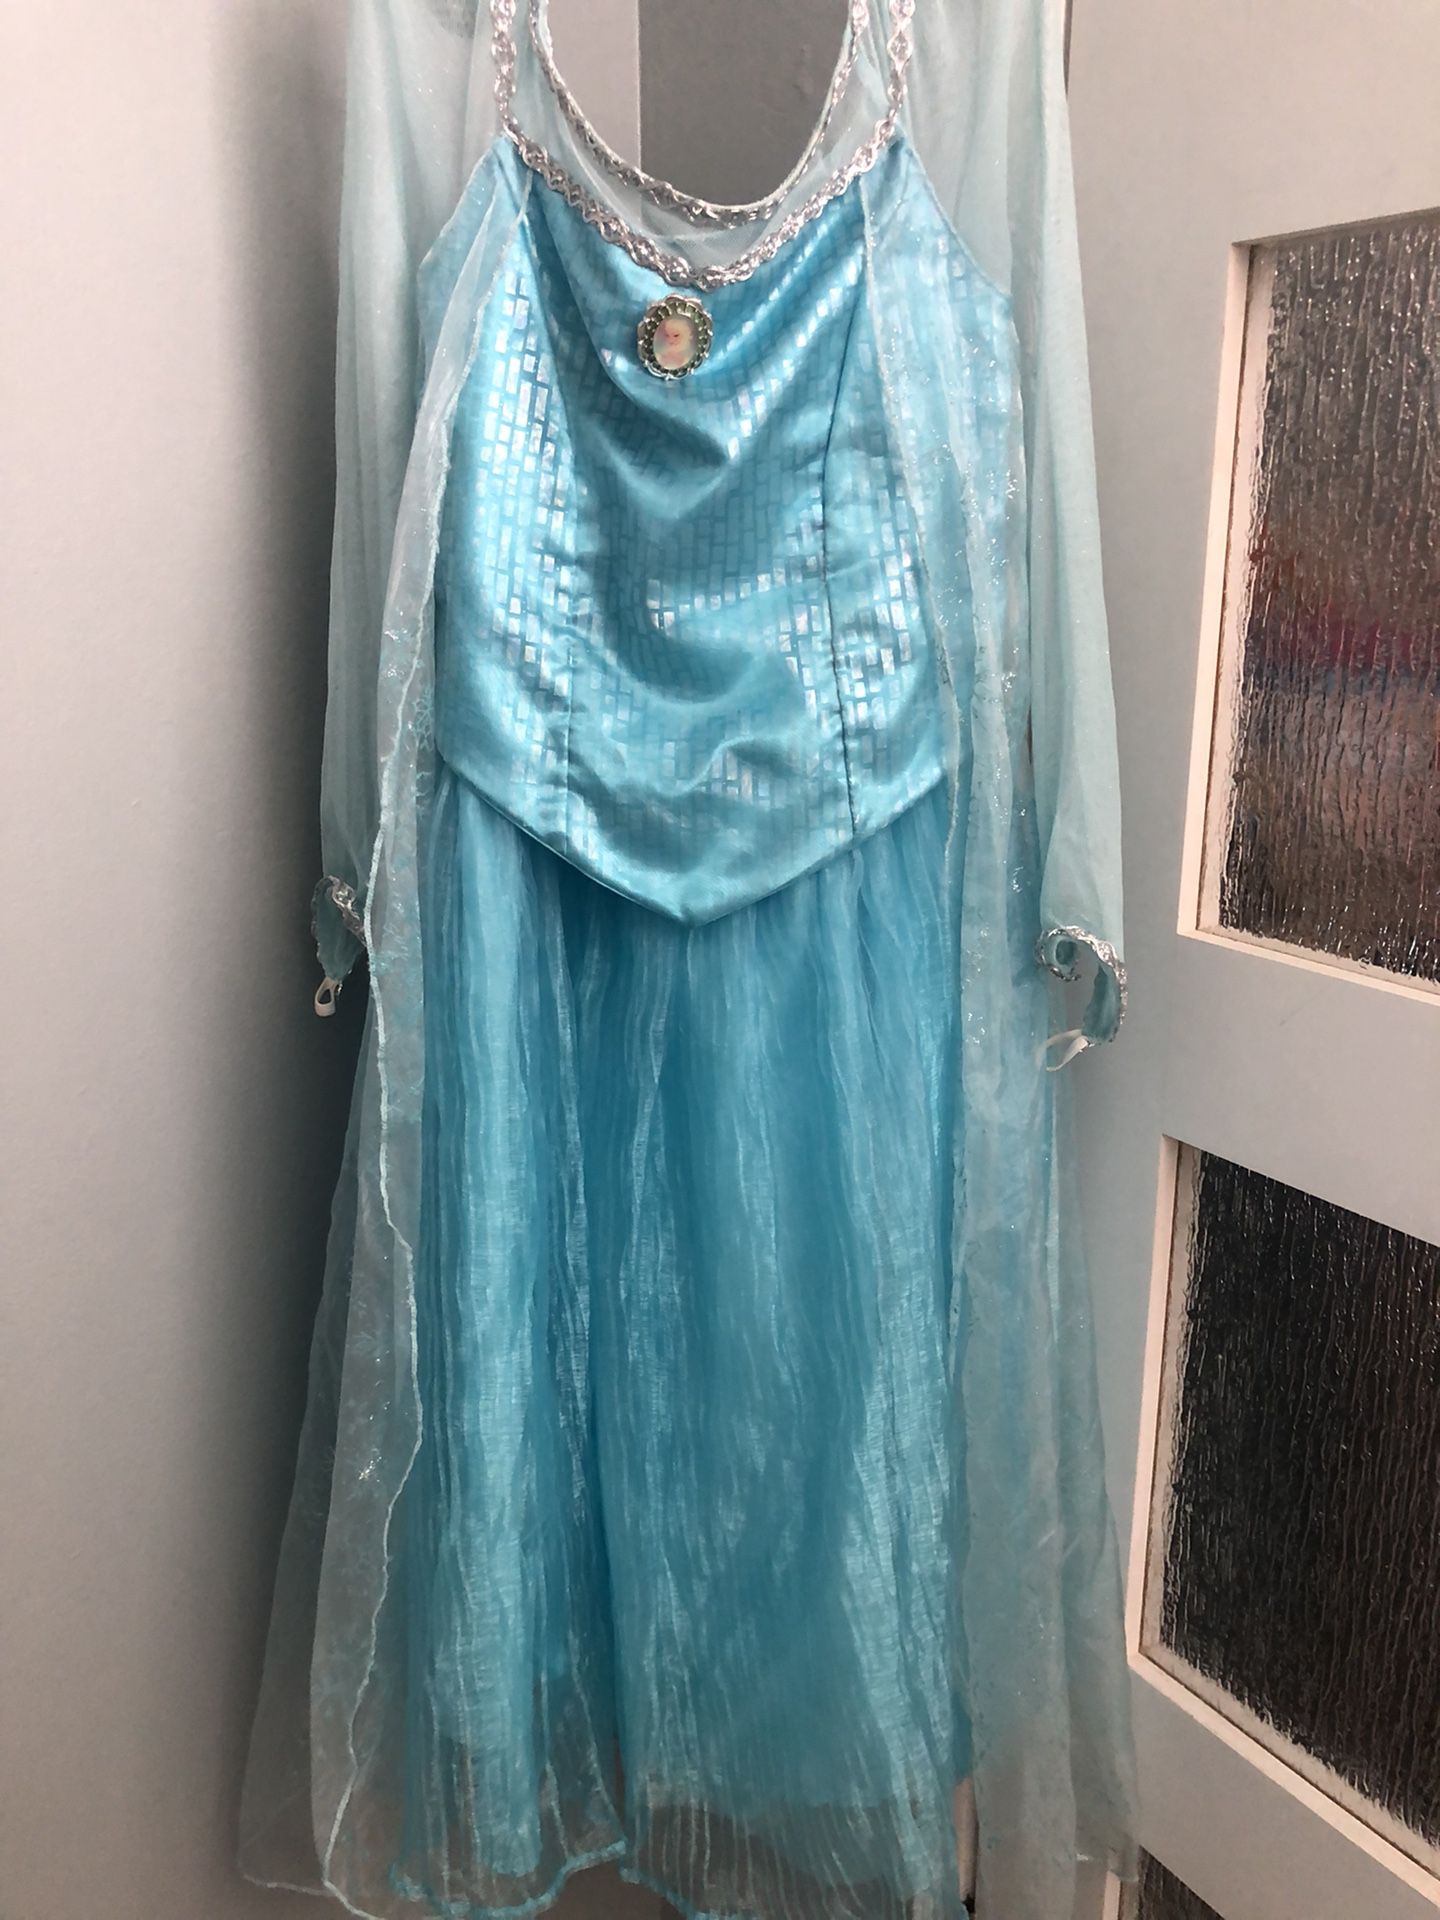 Authentic Disney Parks Original Child Frozen Elsa Princess Costume Dress